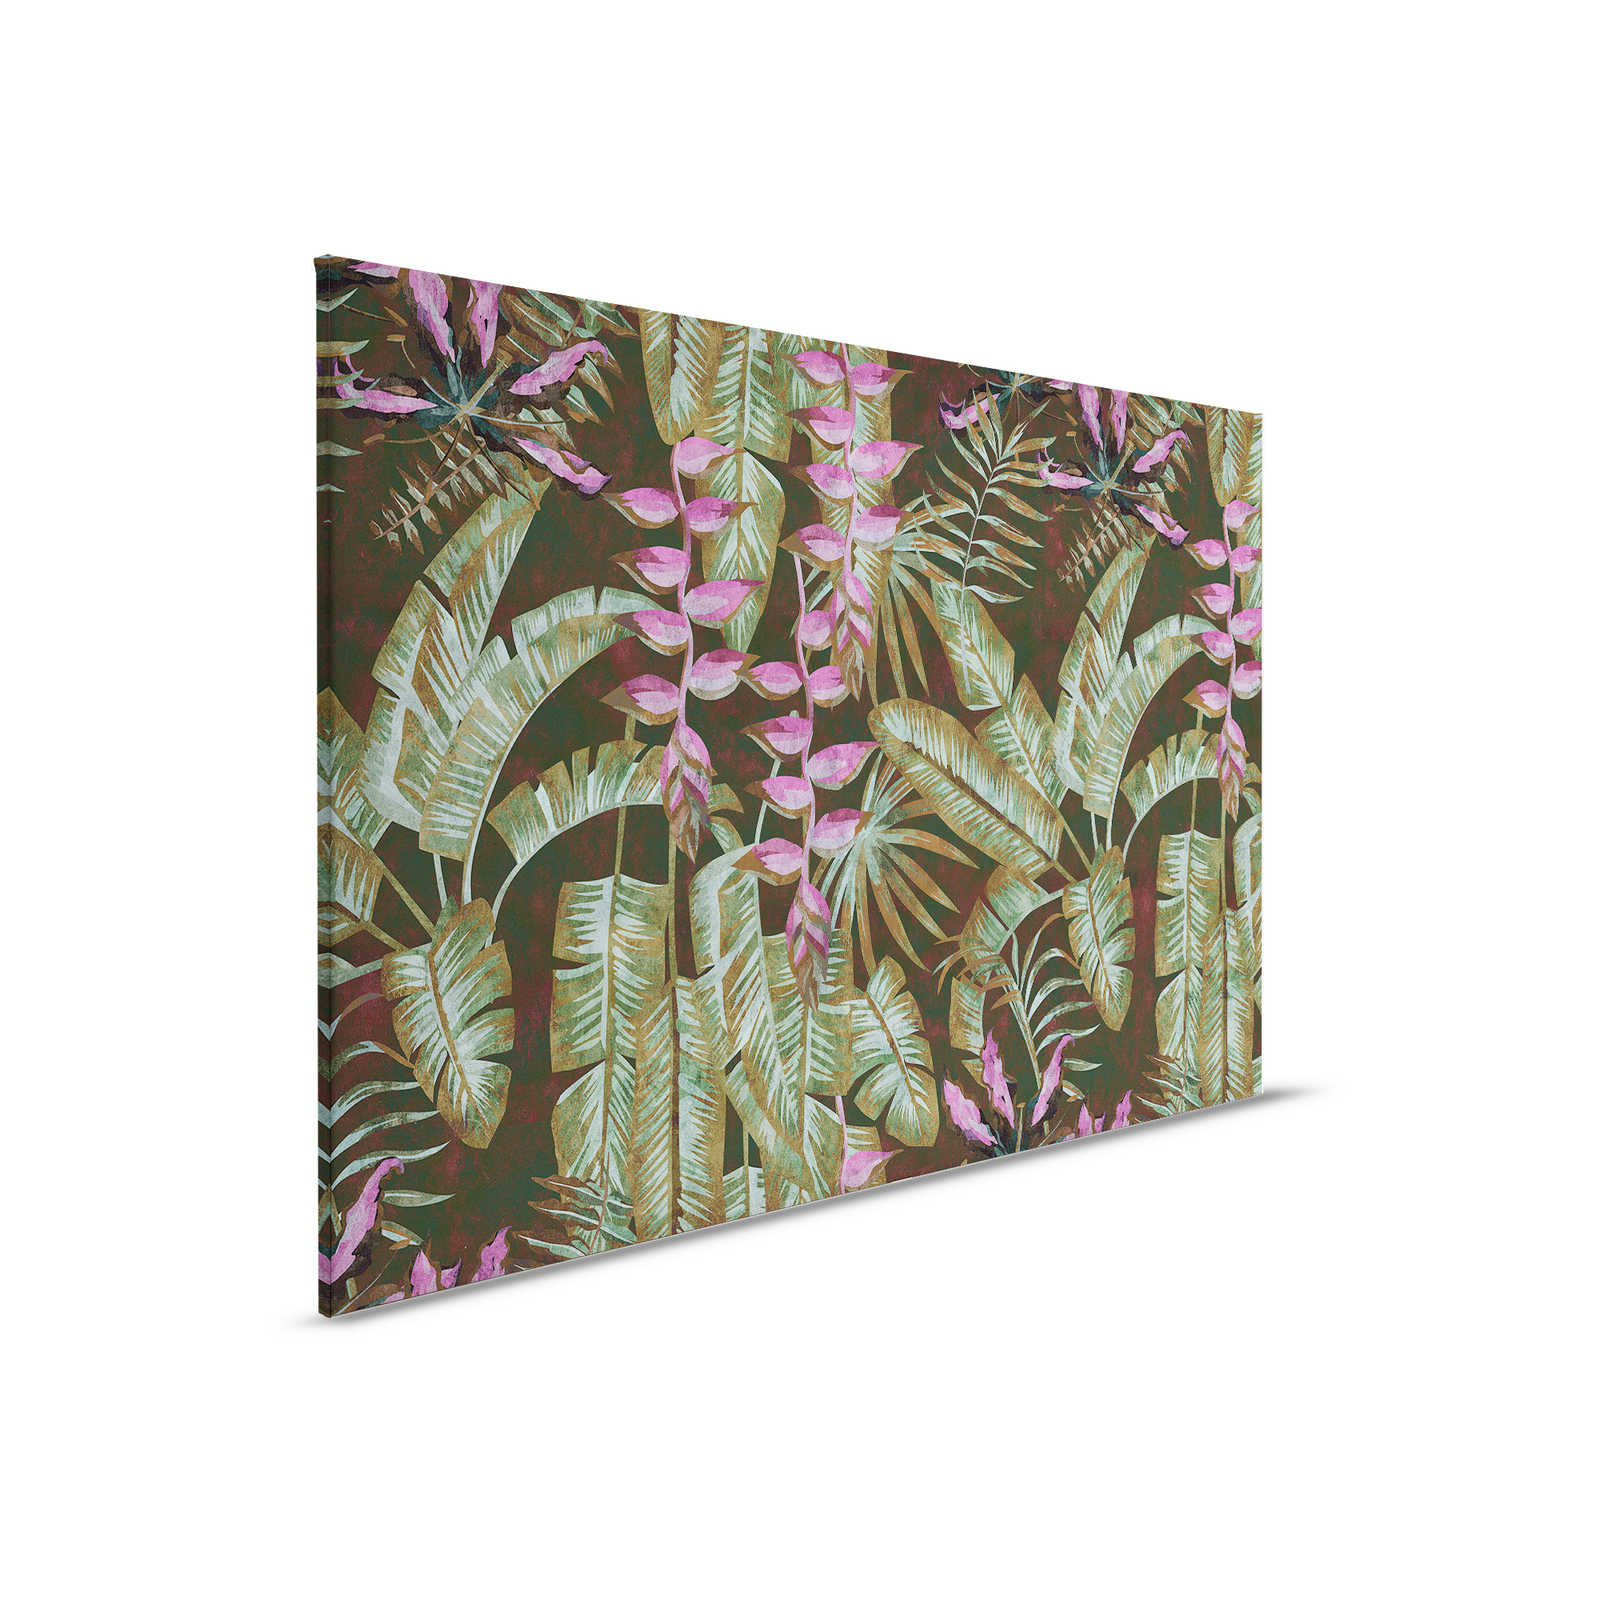 Tropicana 1 - Toile jungle avec feuilles de bananier & fougères - 0,90 m x 0,60 m
